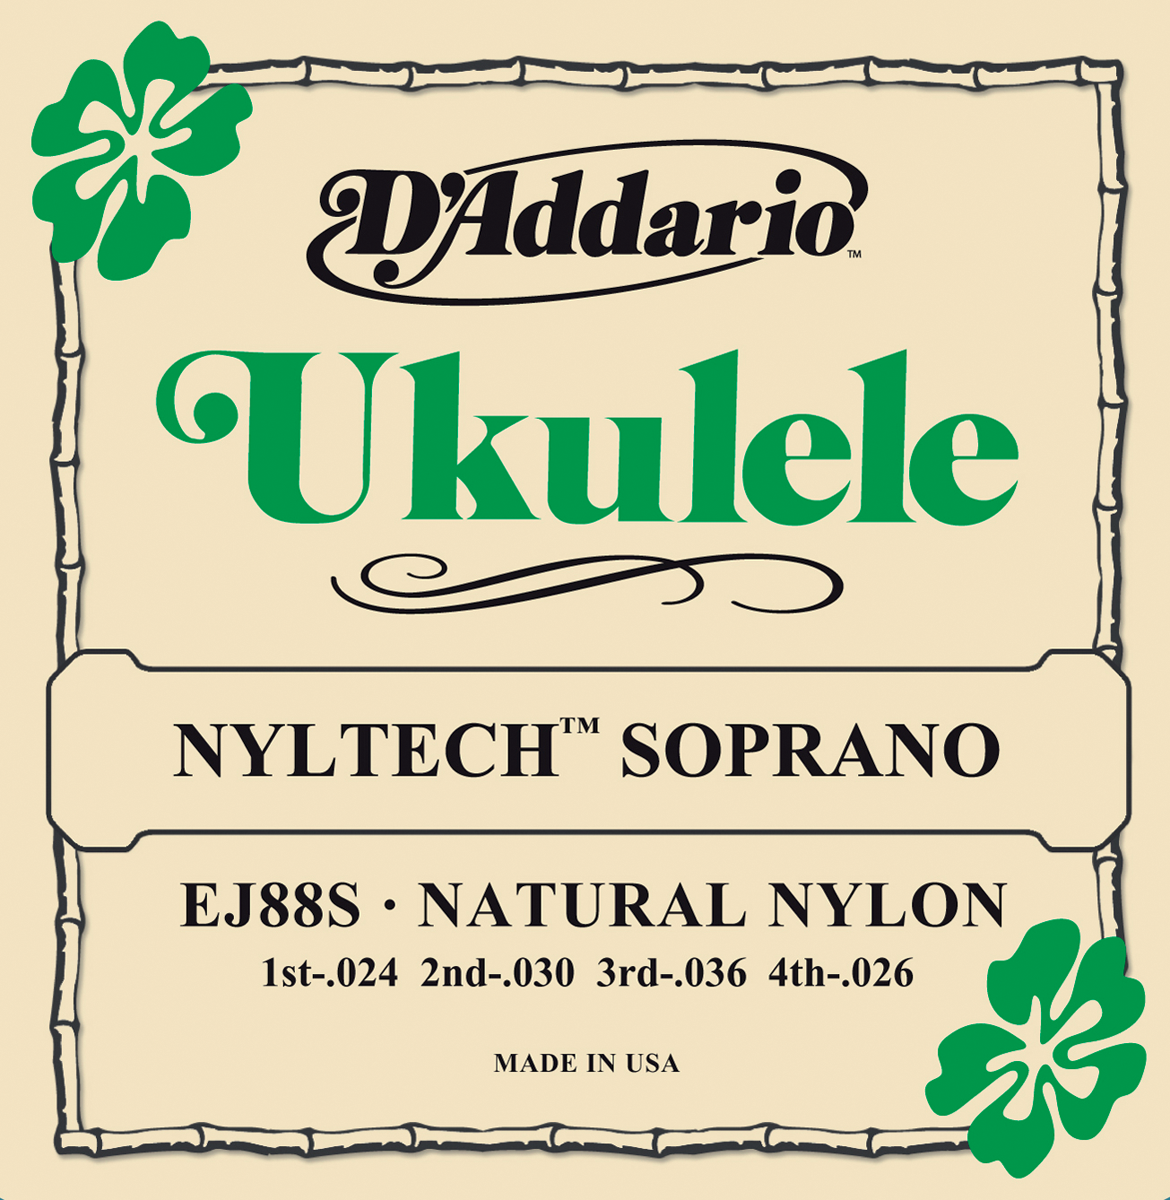 D'addario Ukulele Soprano Nyltech 024.026 Ej88s - Ukulele Saiten - Variation 1